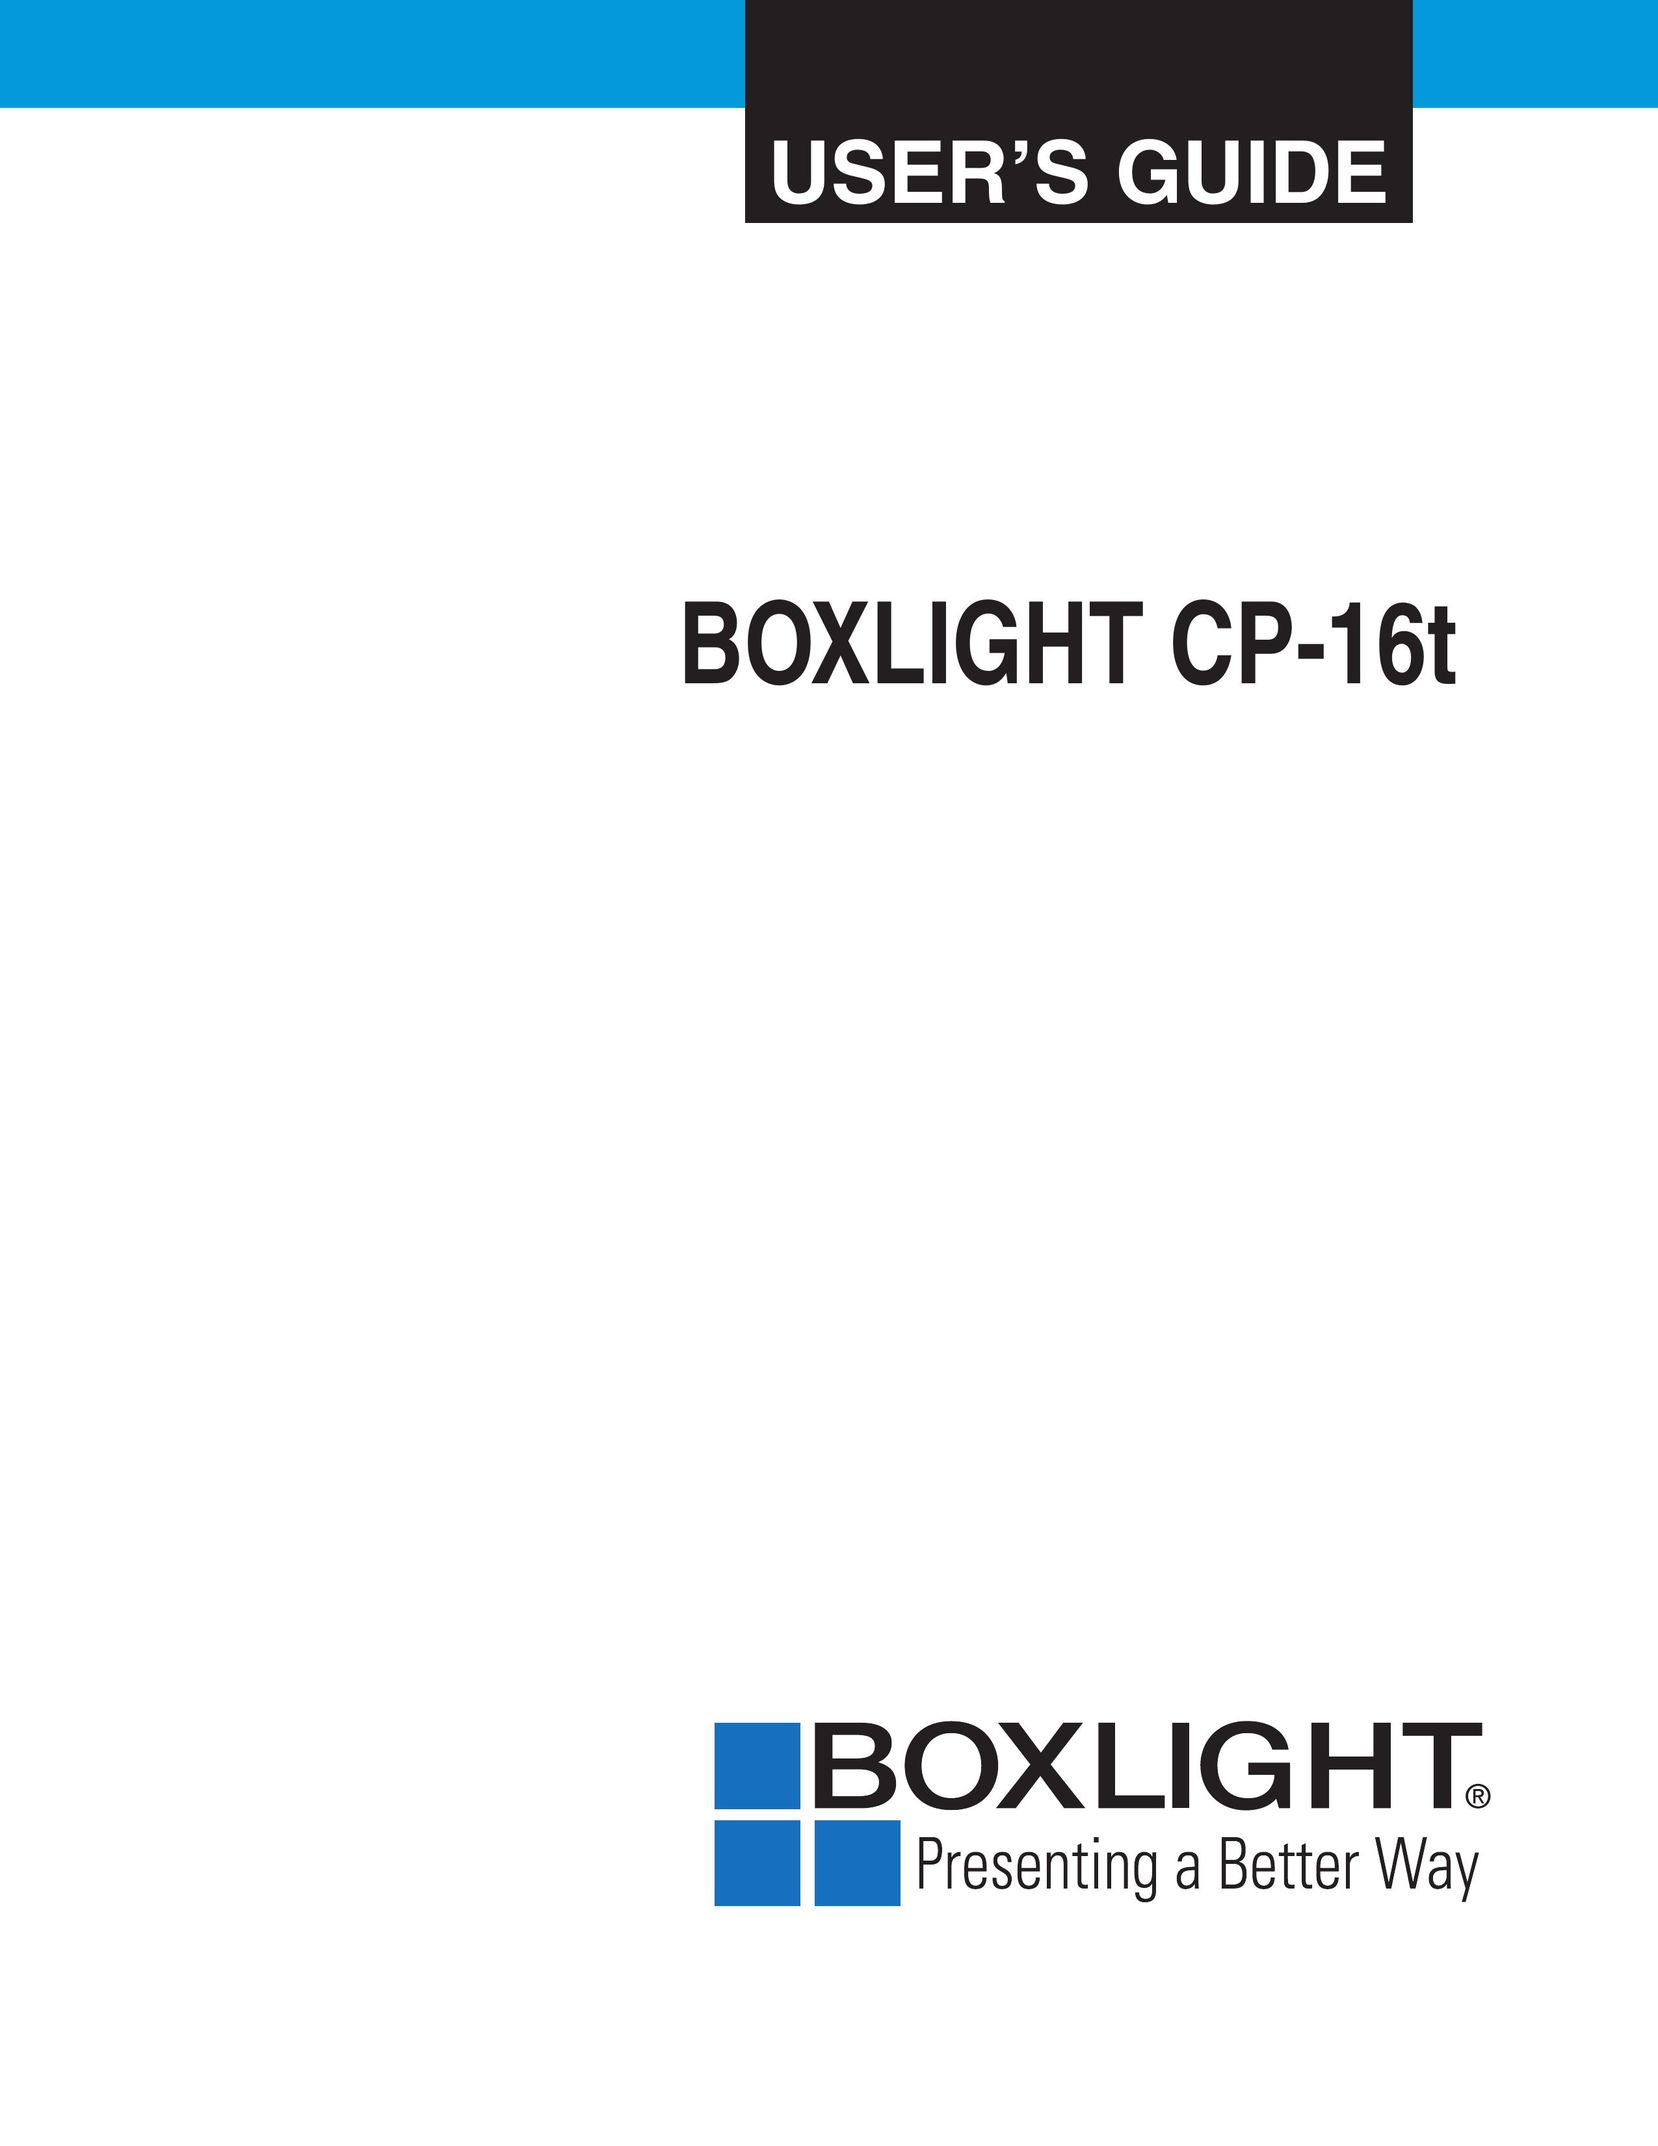 BOXLIGHT cp-16t Projector User Manual